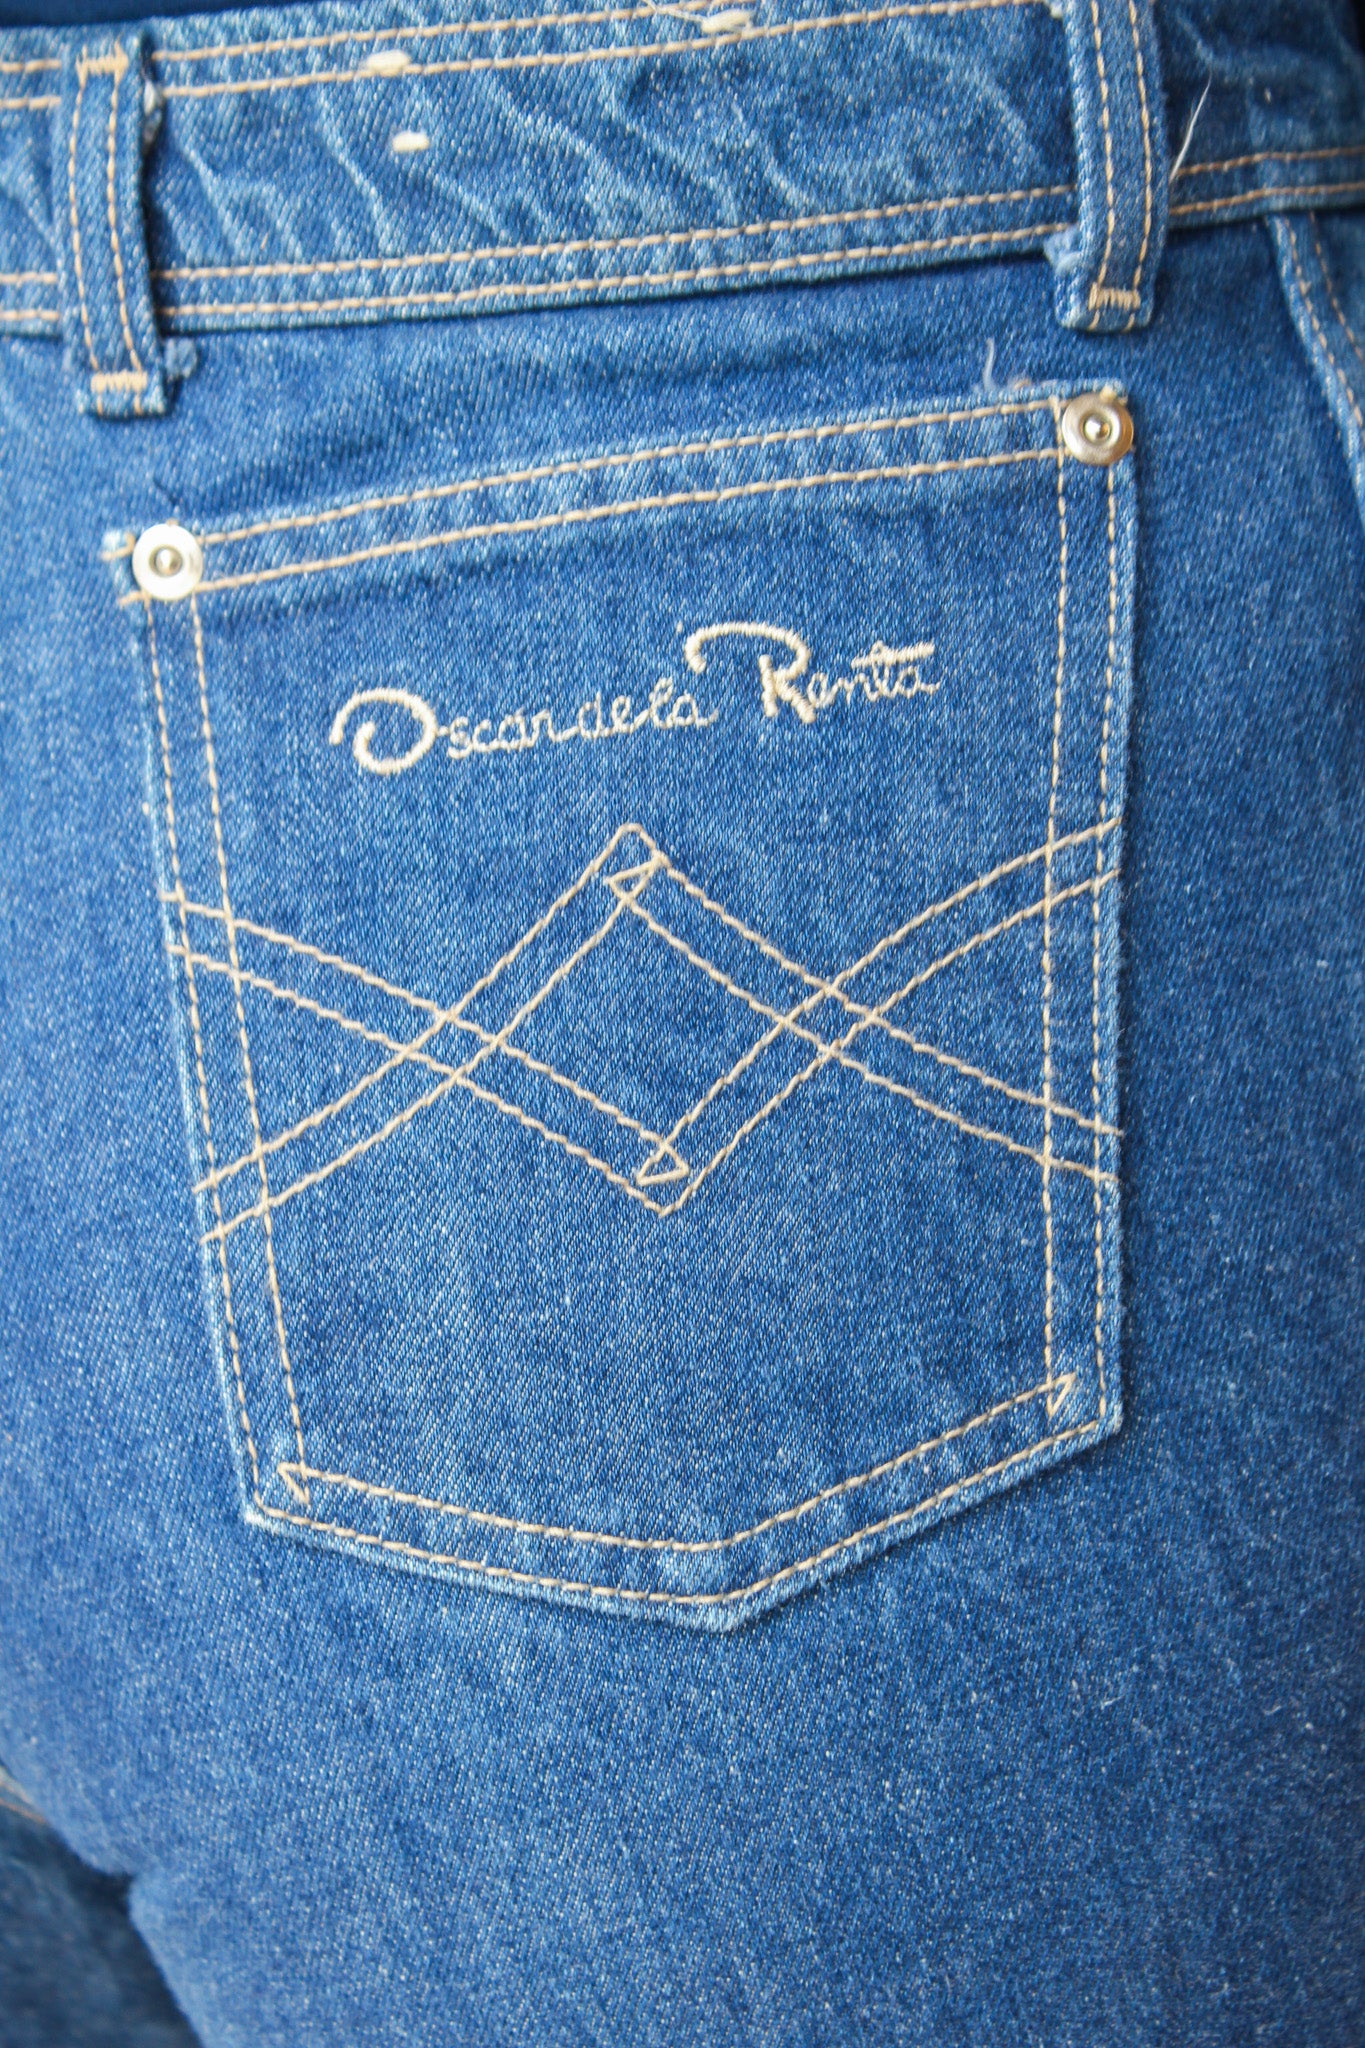 Vintage Oscar De La Renta Jeans Size M